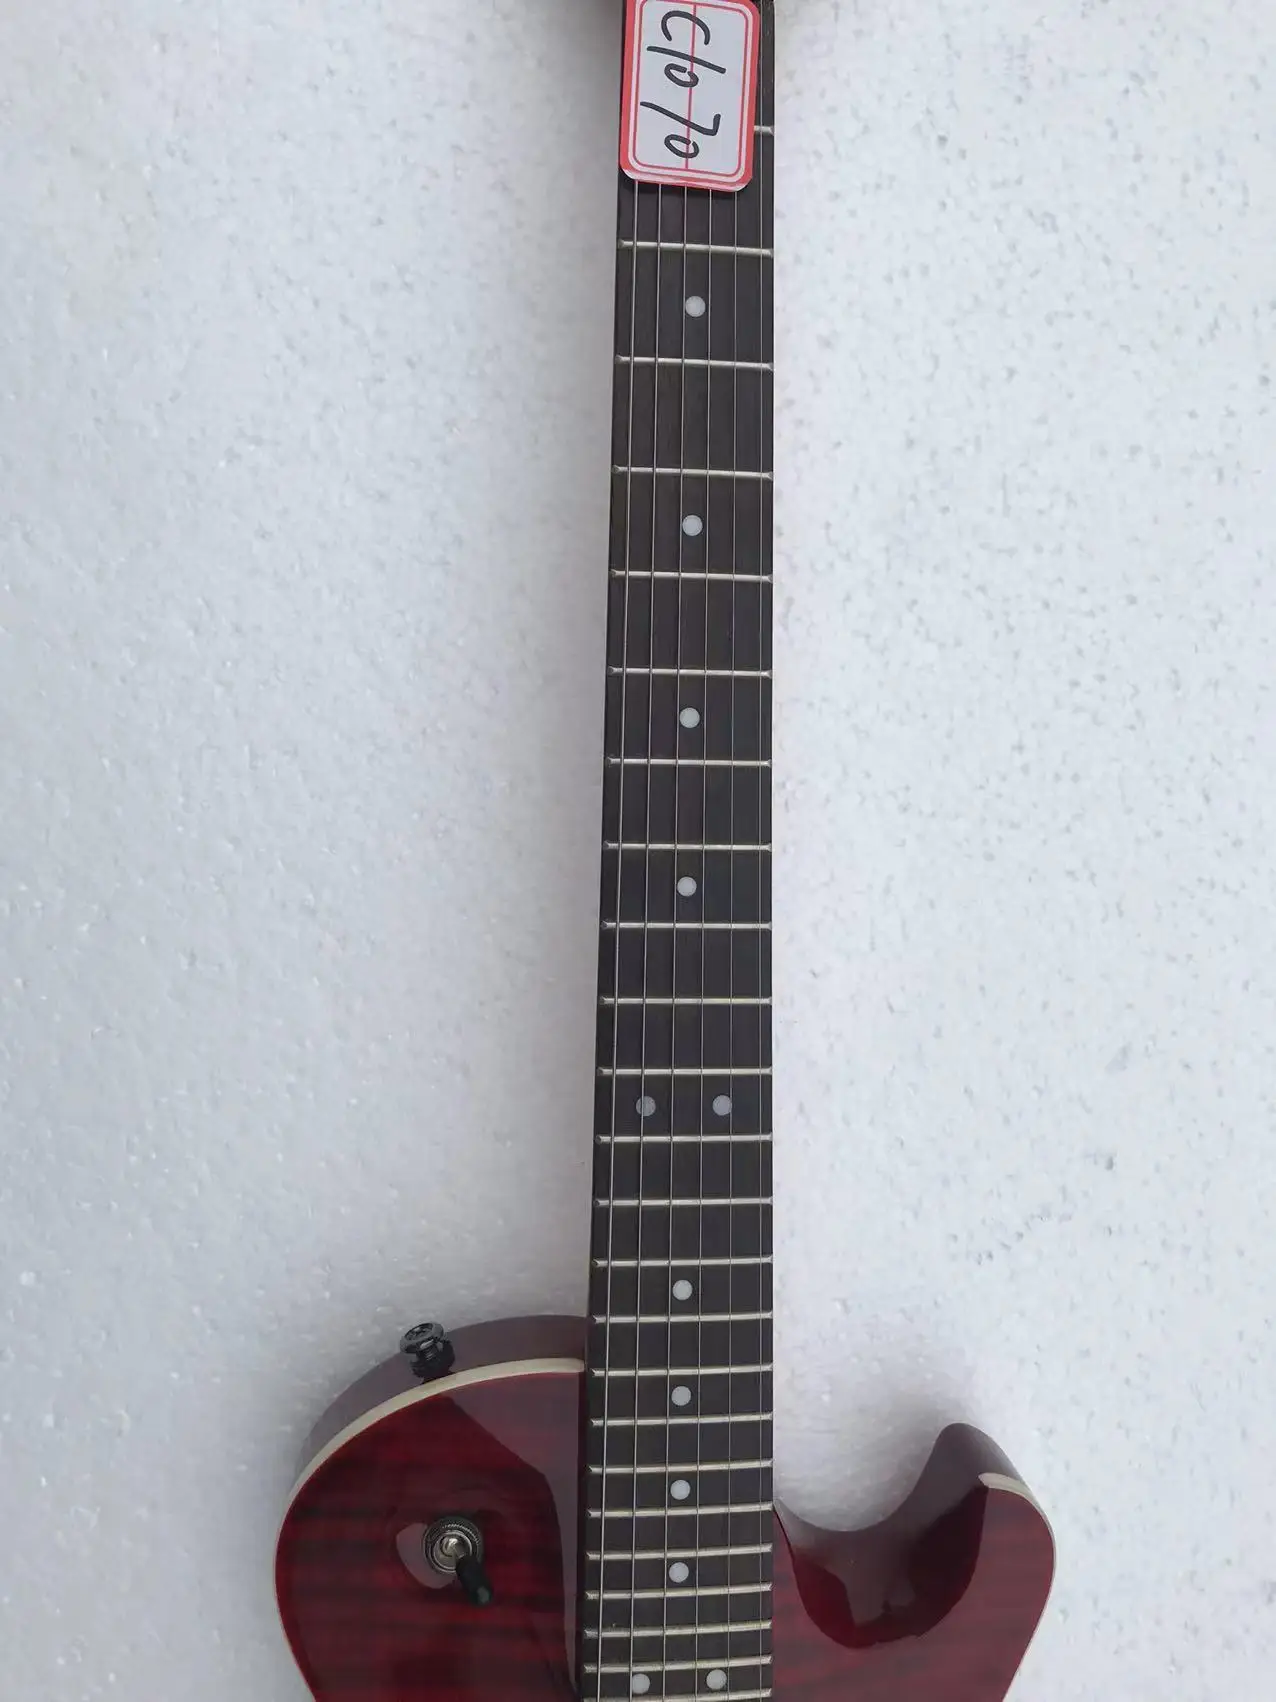 Оригинальная электрическая гитара (не новая) Tiger / Flame Maple Top, оригинальный аксессуар, скидка, бесплатная доставка, C1070